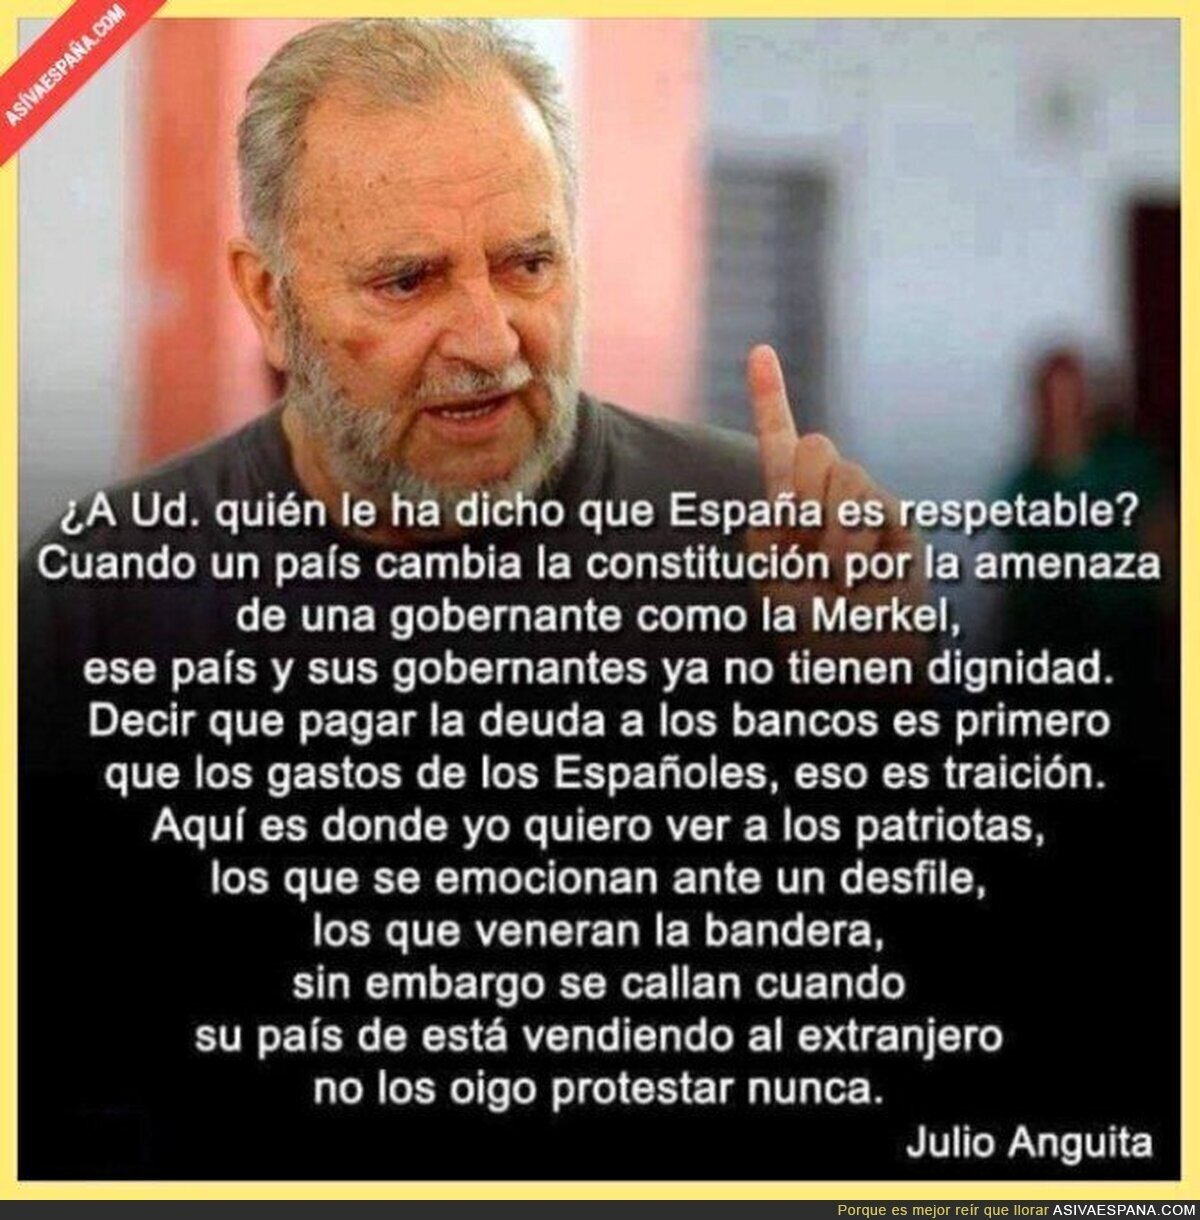 Julio Anguita y sus verdades como puños